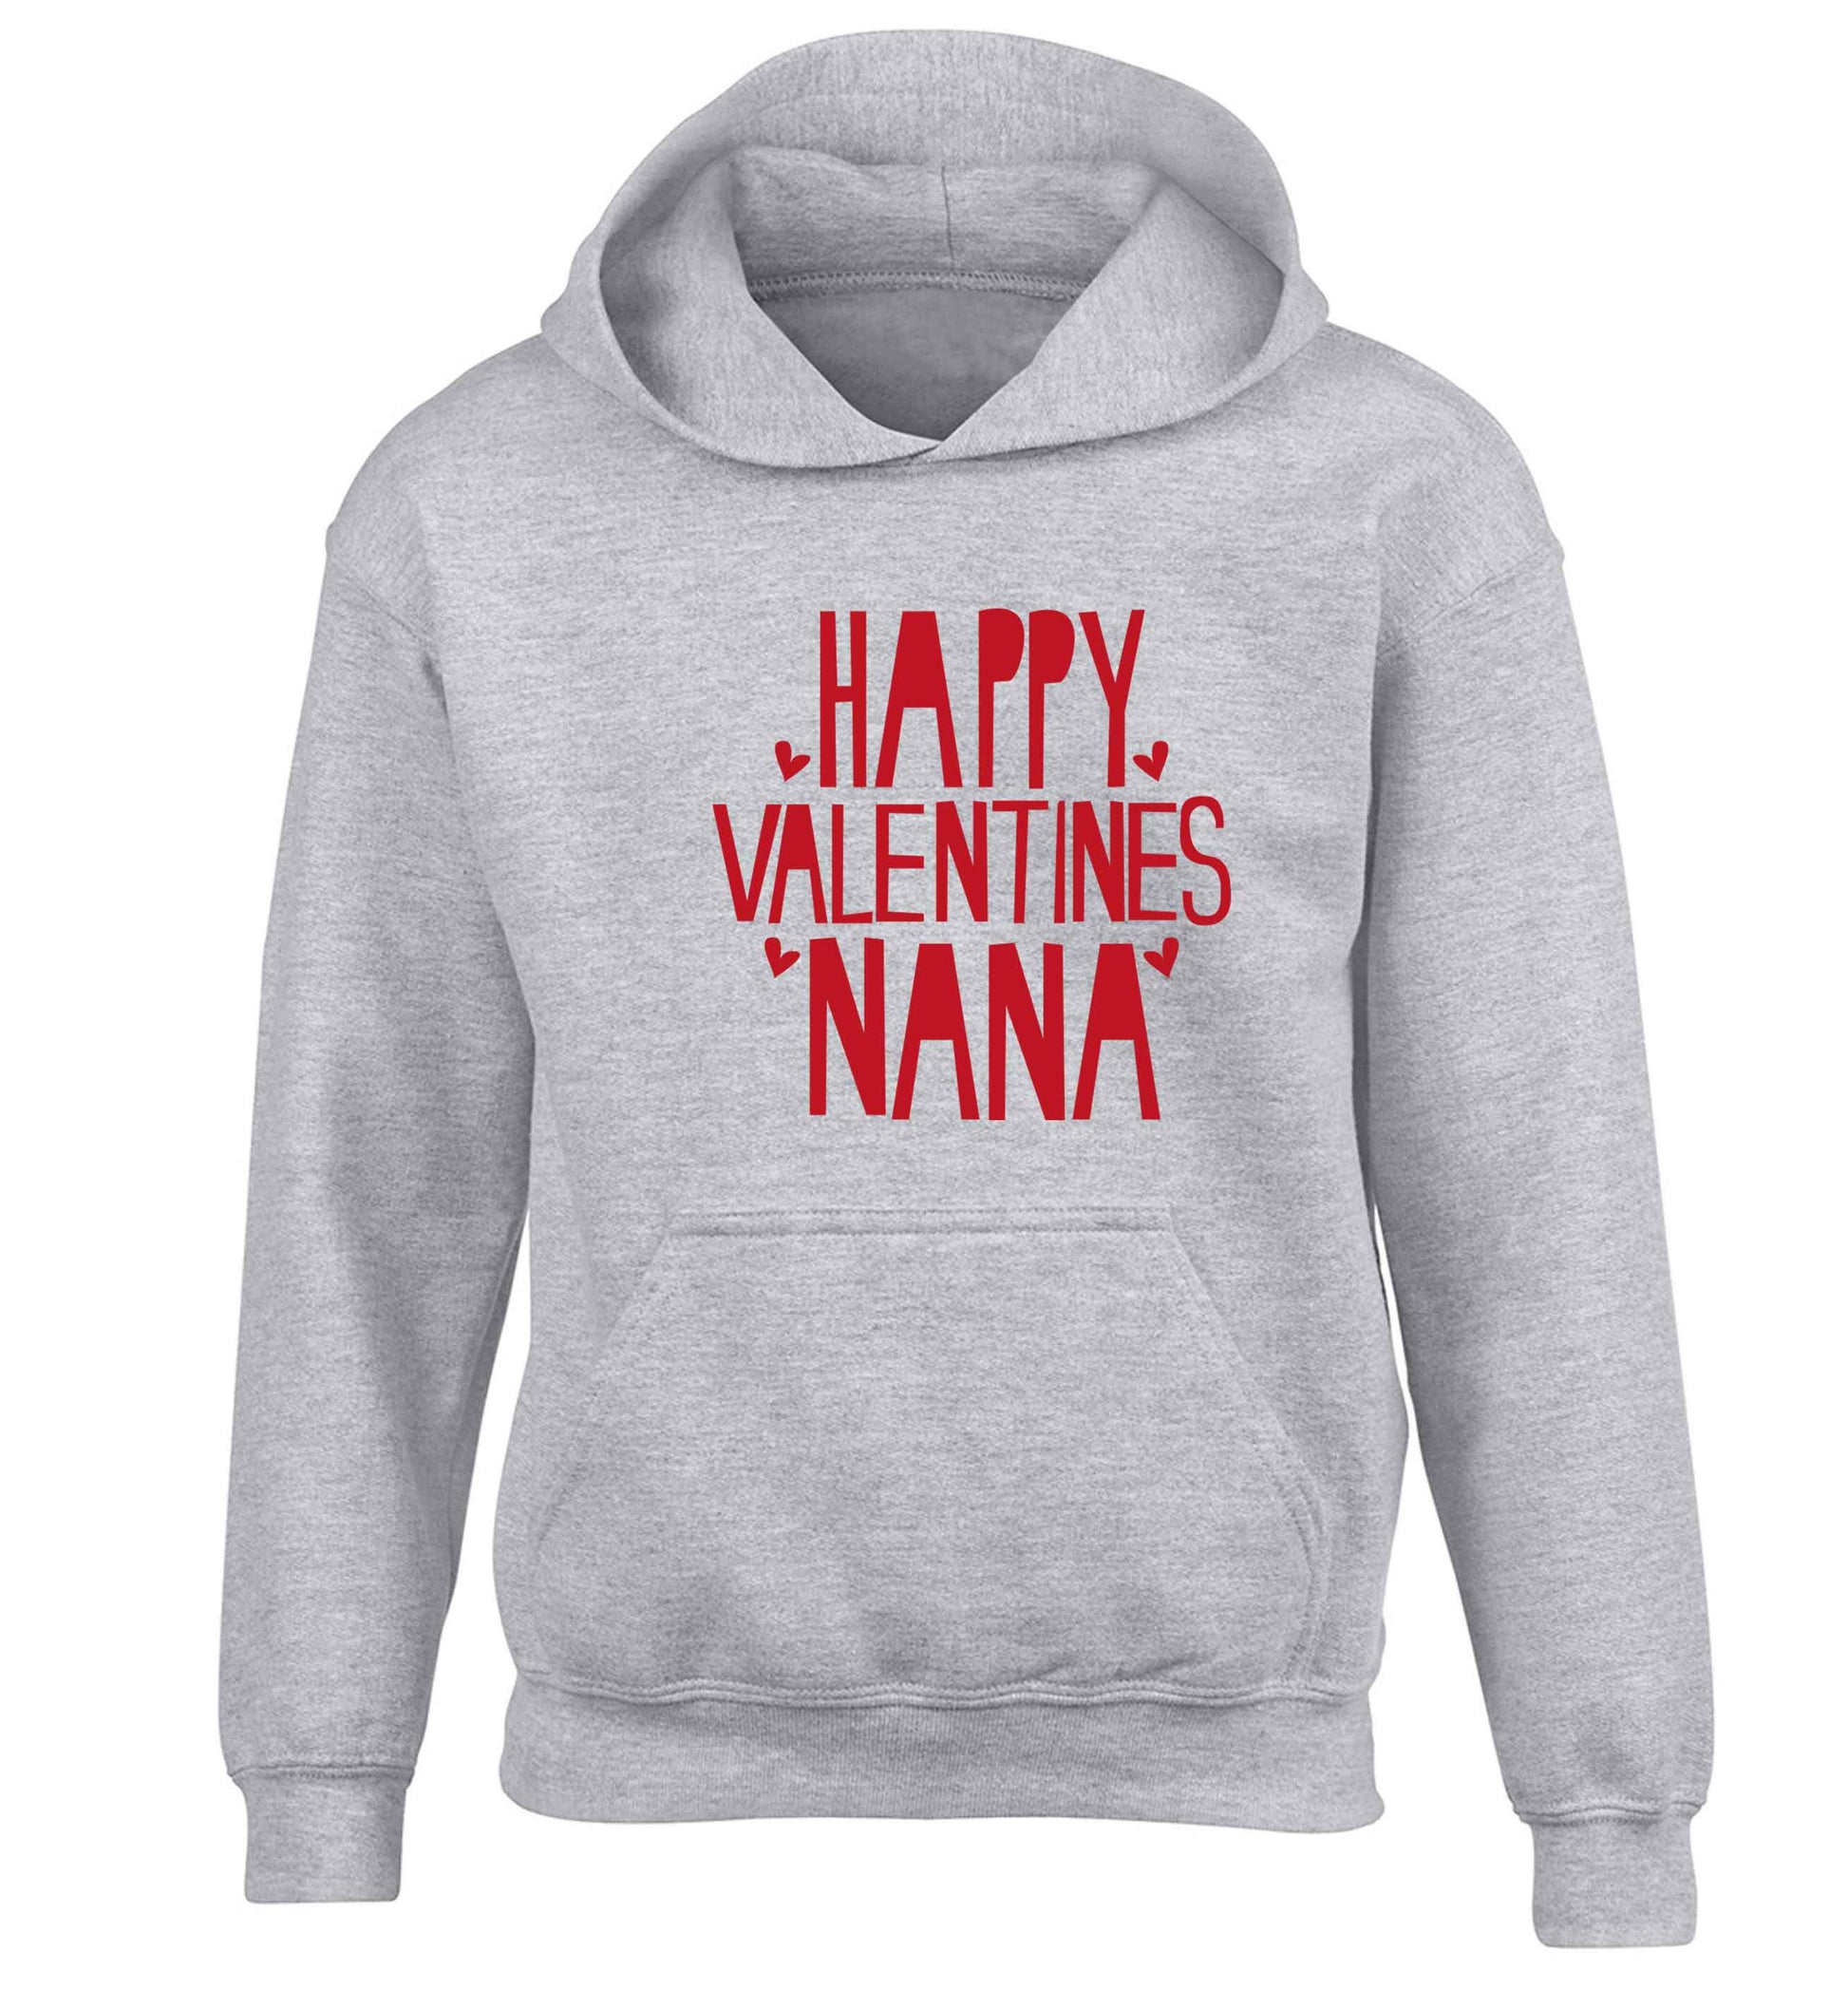 Happy valentines nana children's grey hoodie 12-13 Years